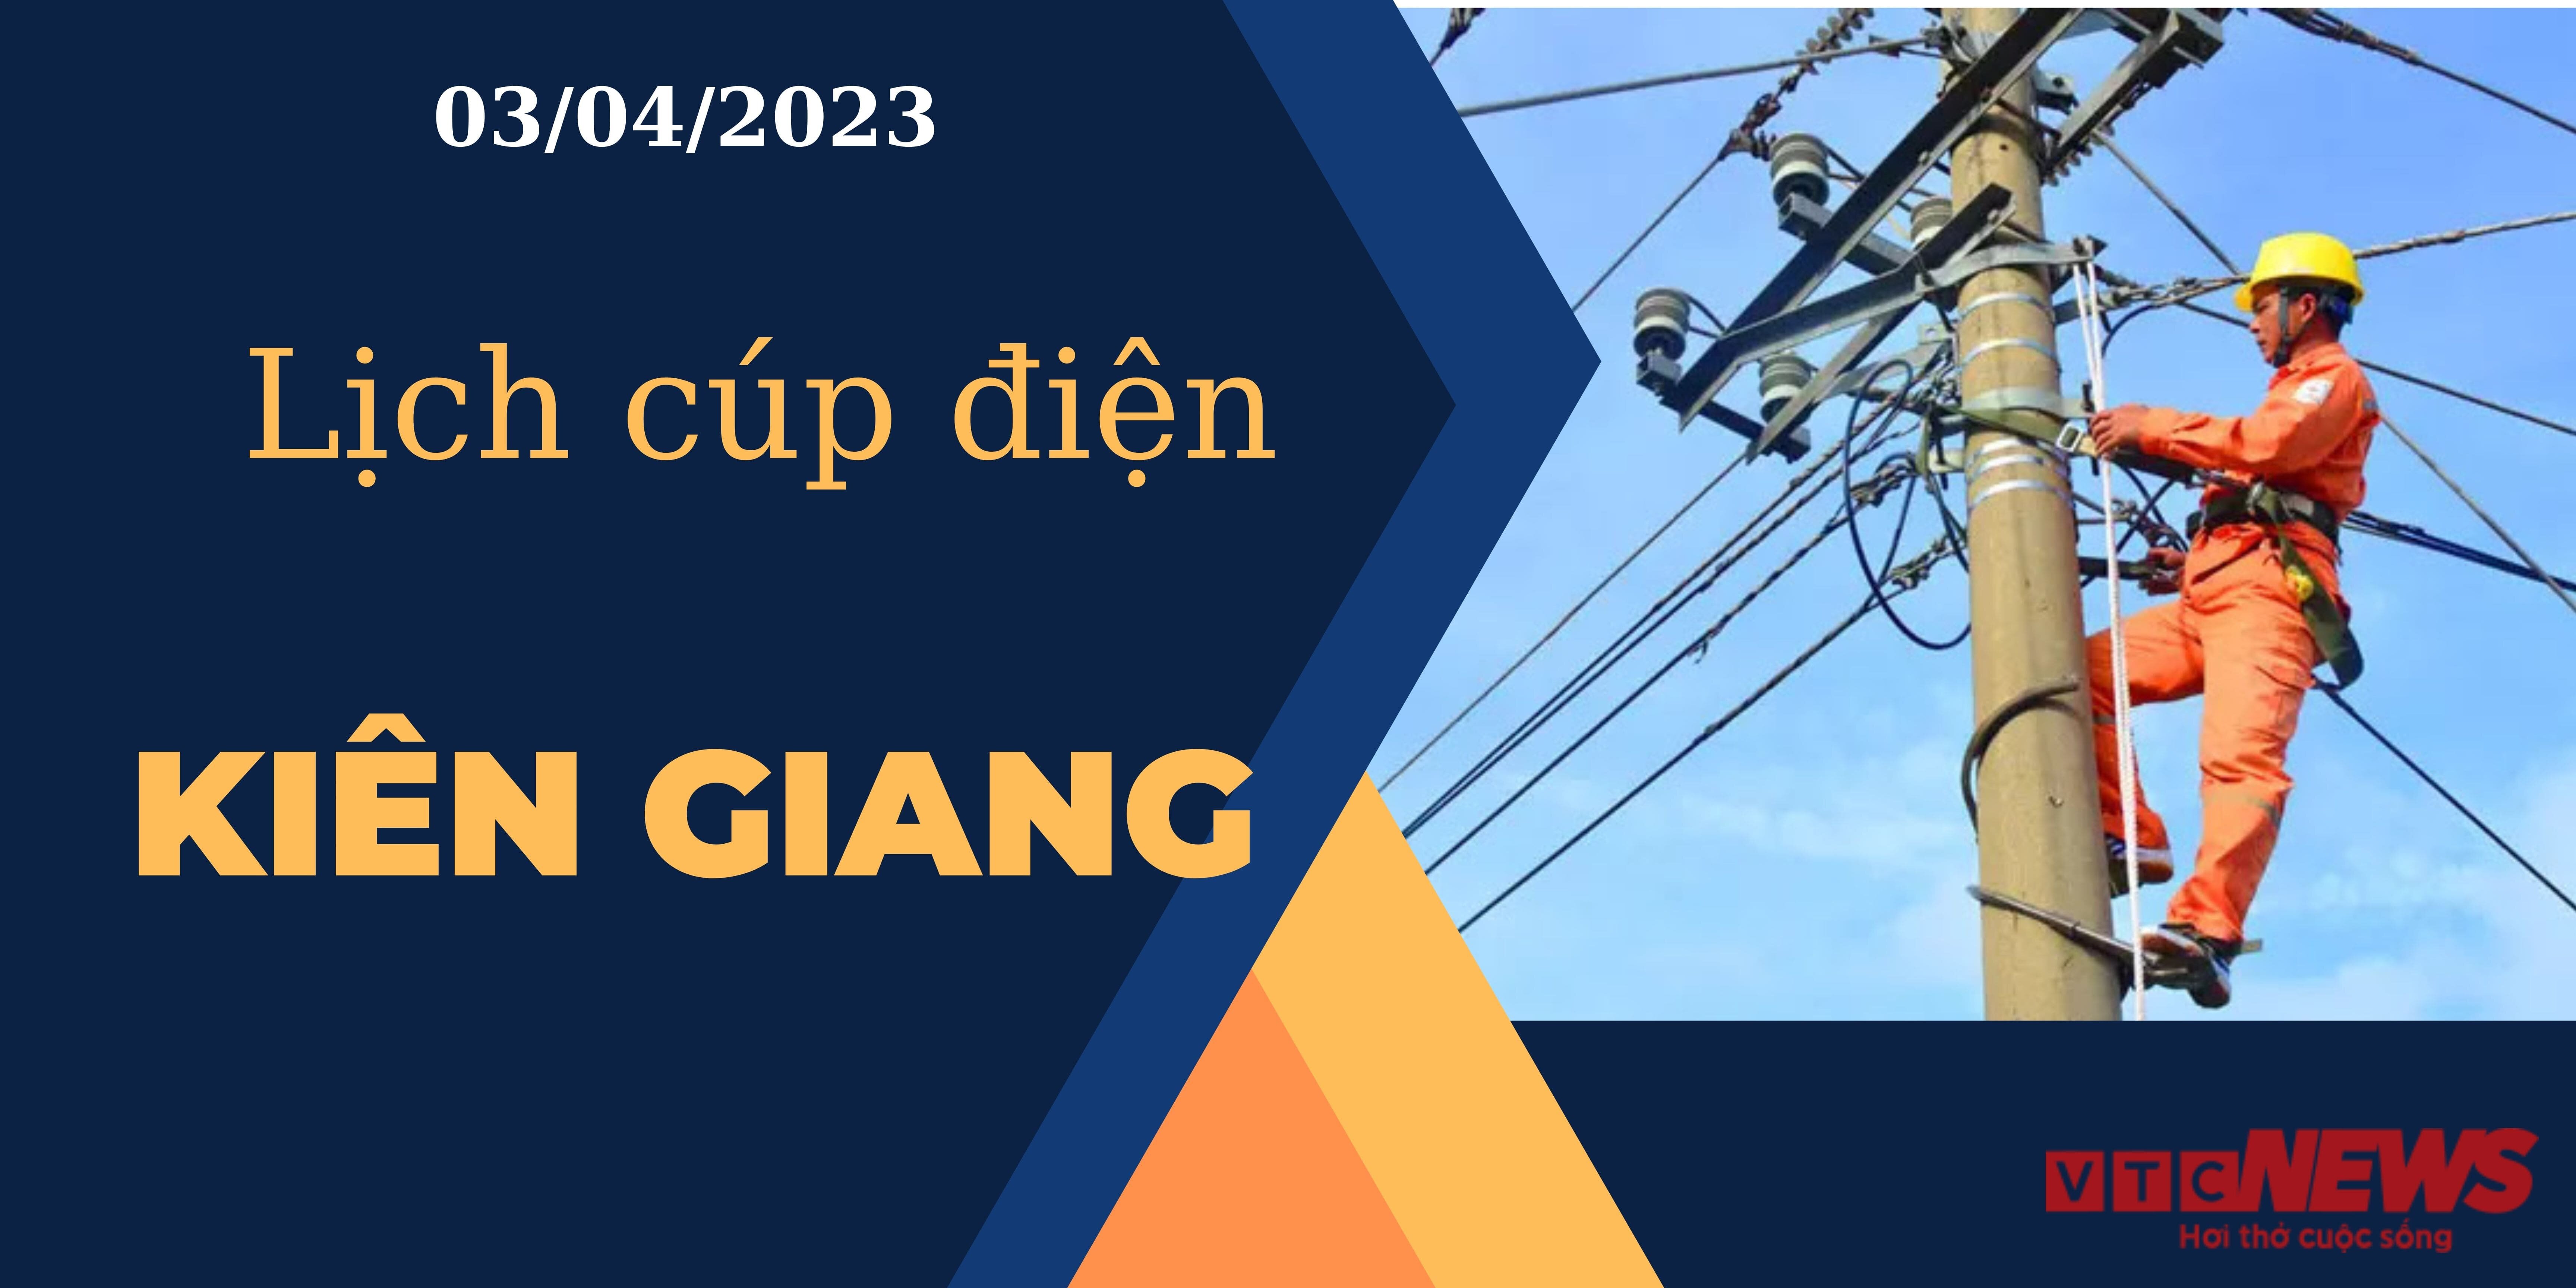 Lịch cúp điện hôm nay tại Kiên Giang ngày 03/04/2023 - 1